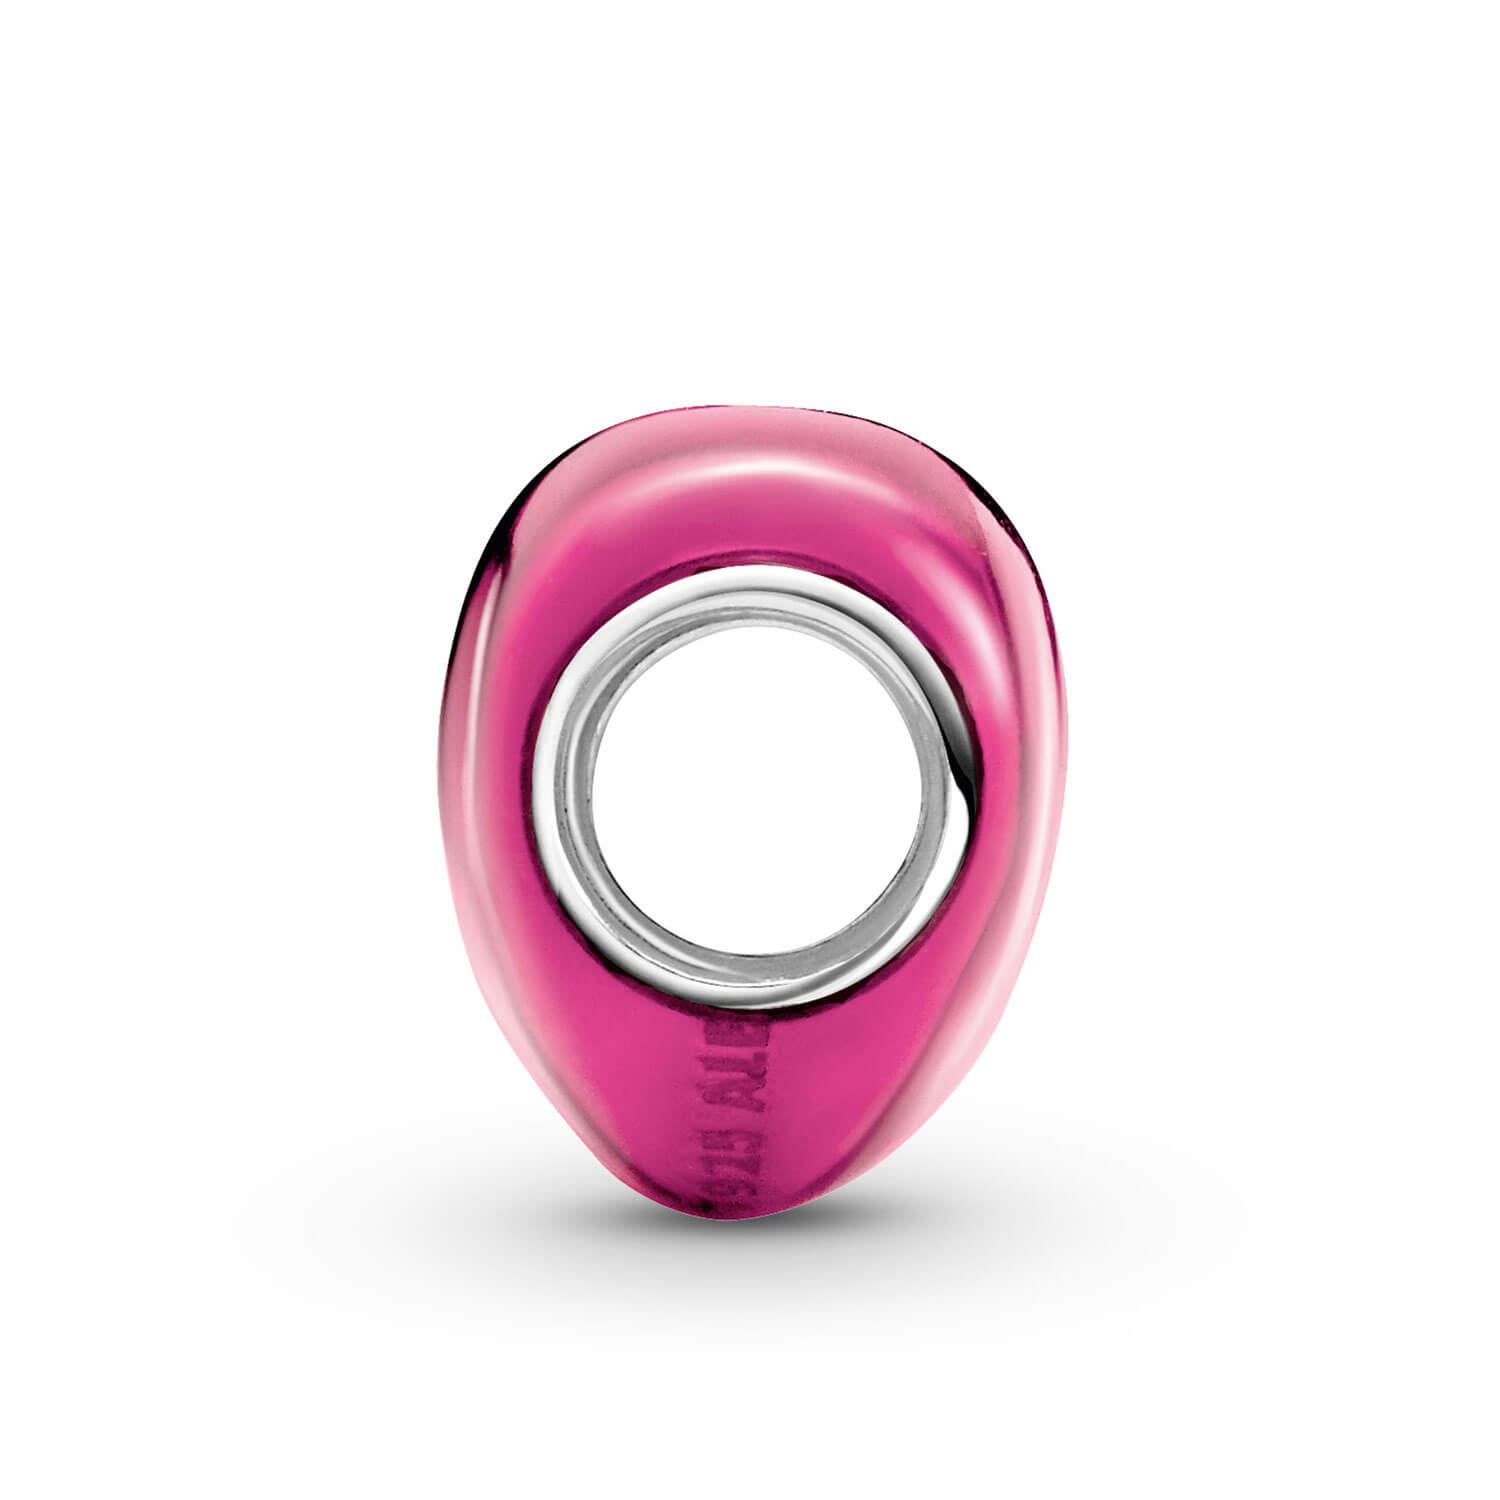 PANDORA Glittering Soft Pink Enamel Heart Charm 791886EN113 – Busy